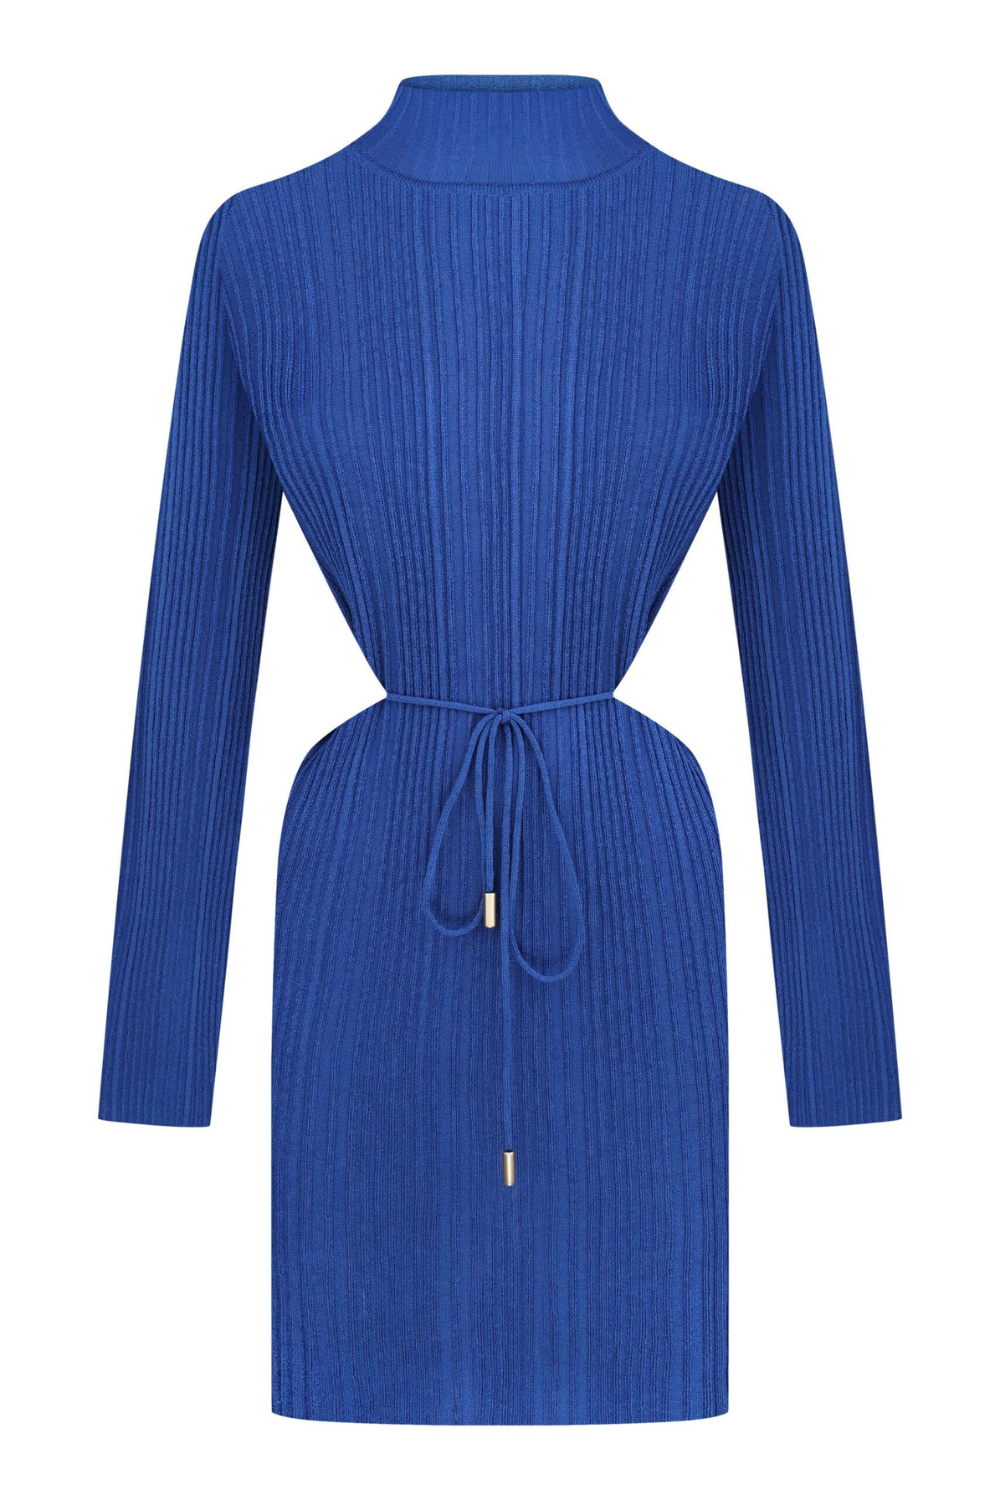 Pletené šaty tmavě modrá (K.KVIT, T.MOSCA) PDJ23-03